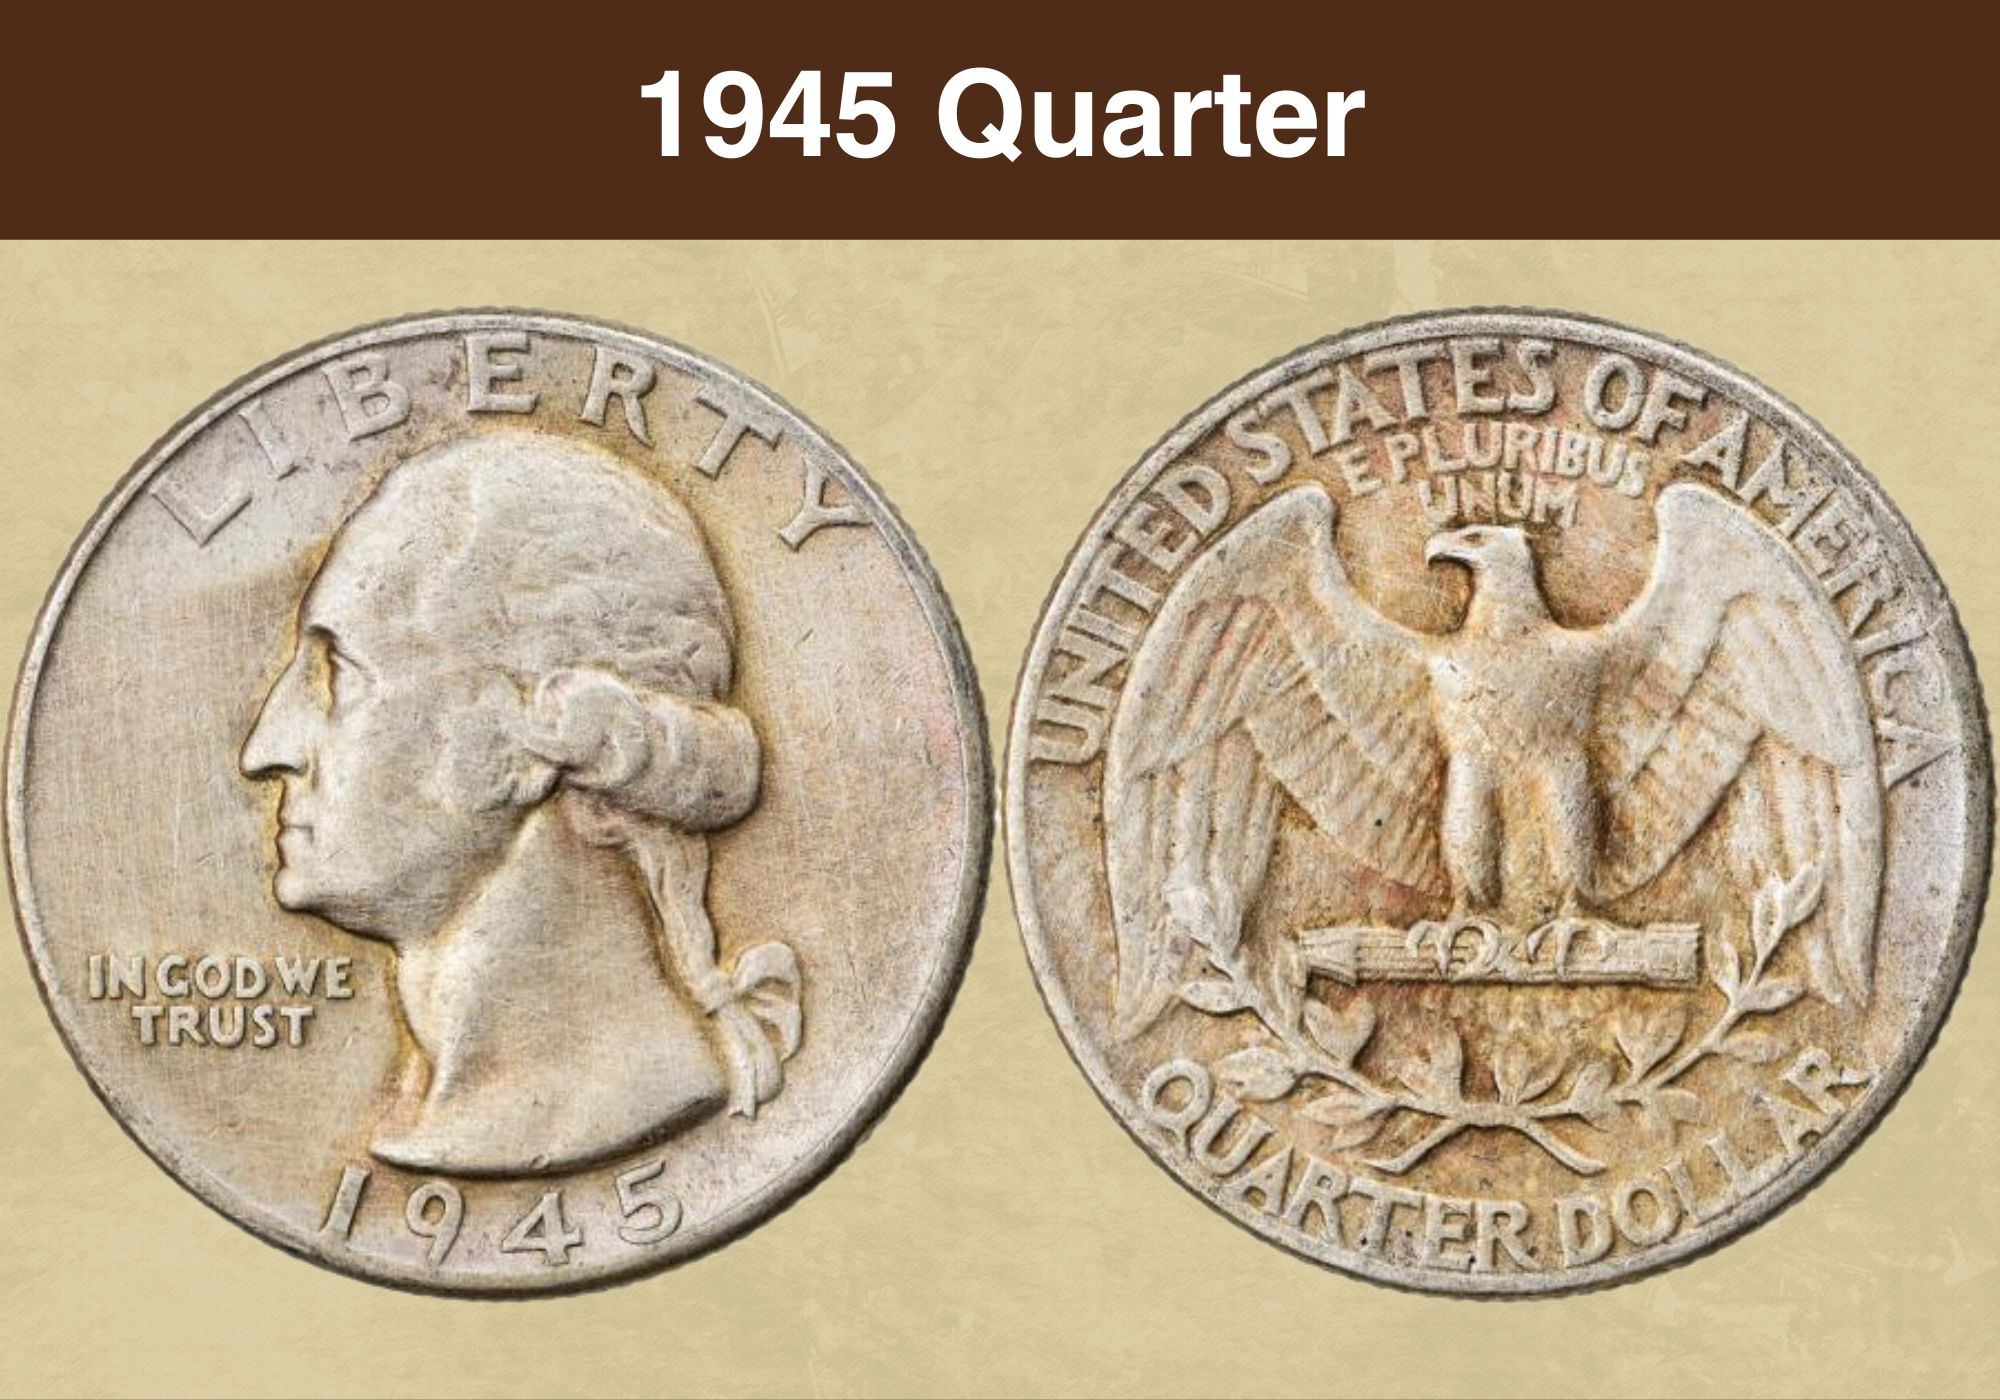 1945 Quarter Value